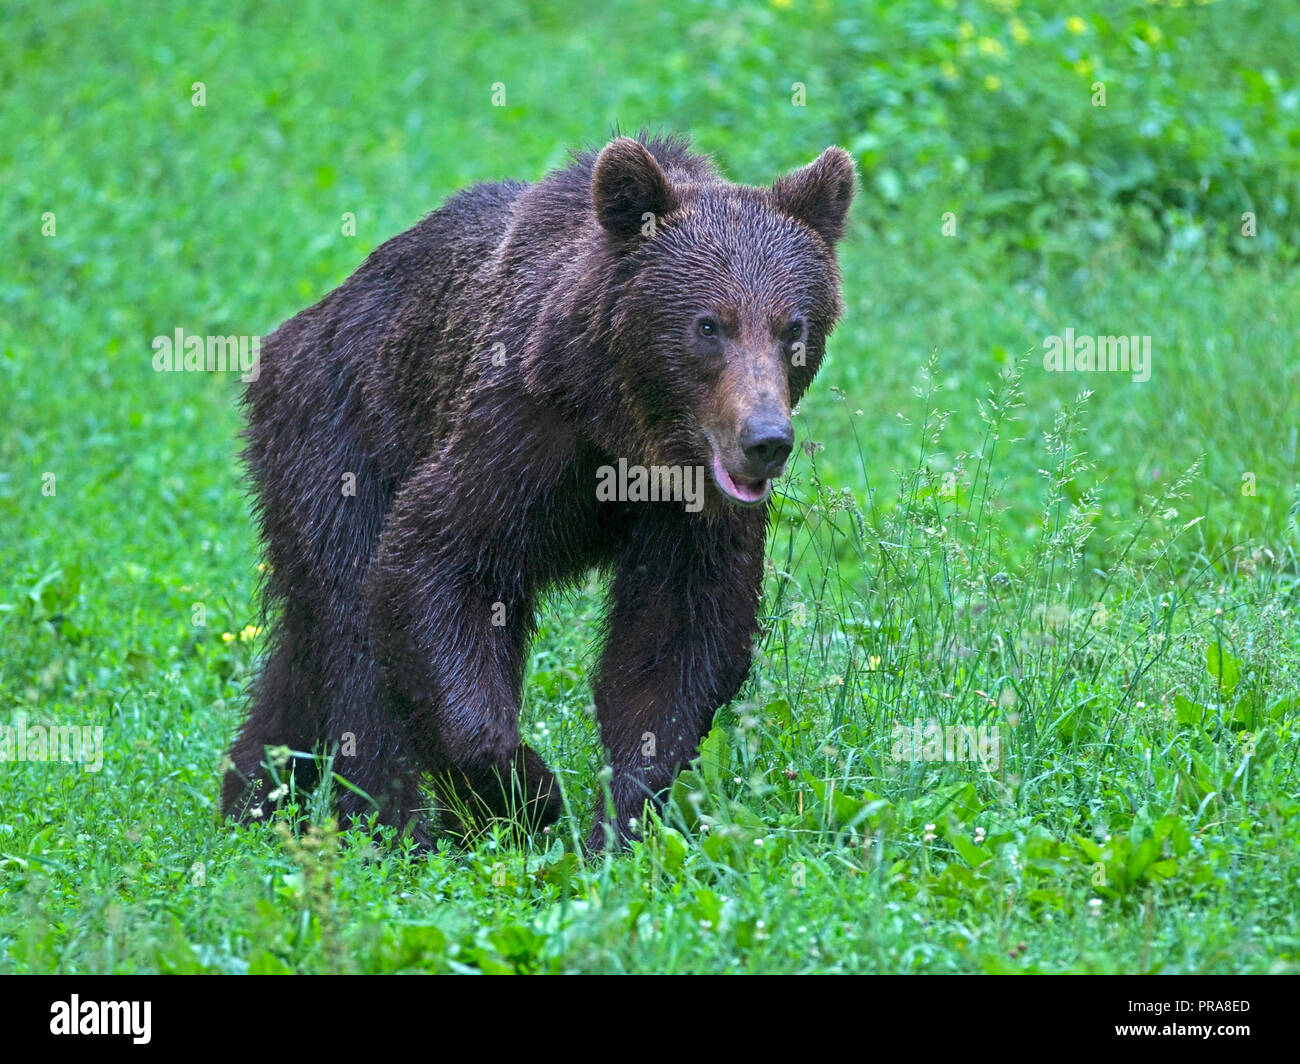 European brown bear walking across meadow Stock Photo